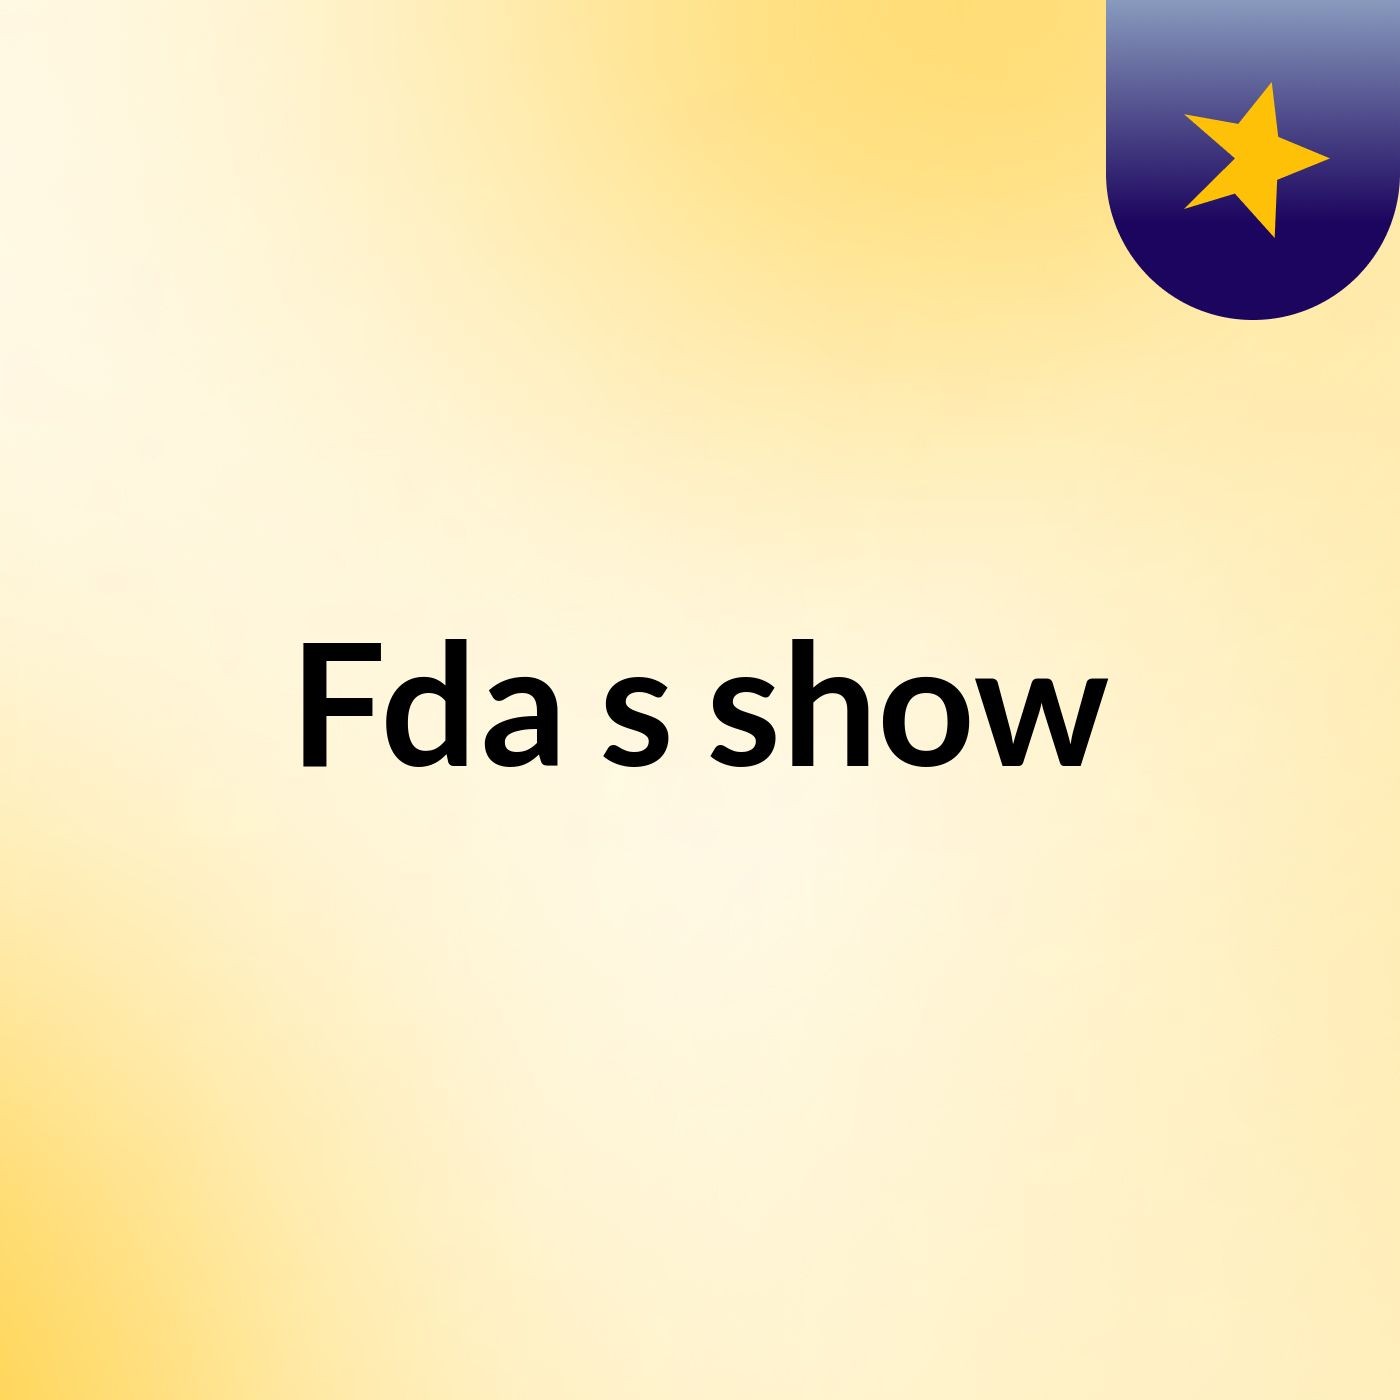 Fda's show